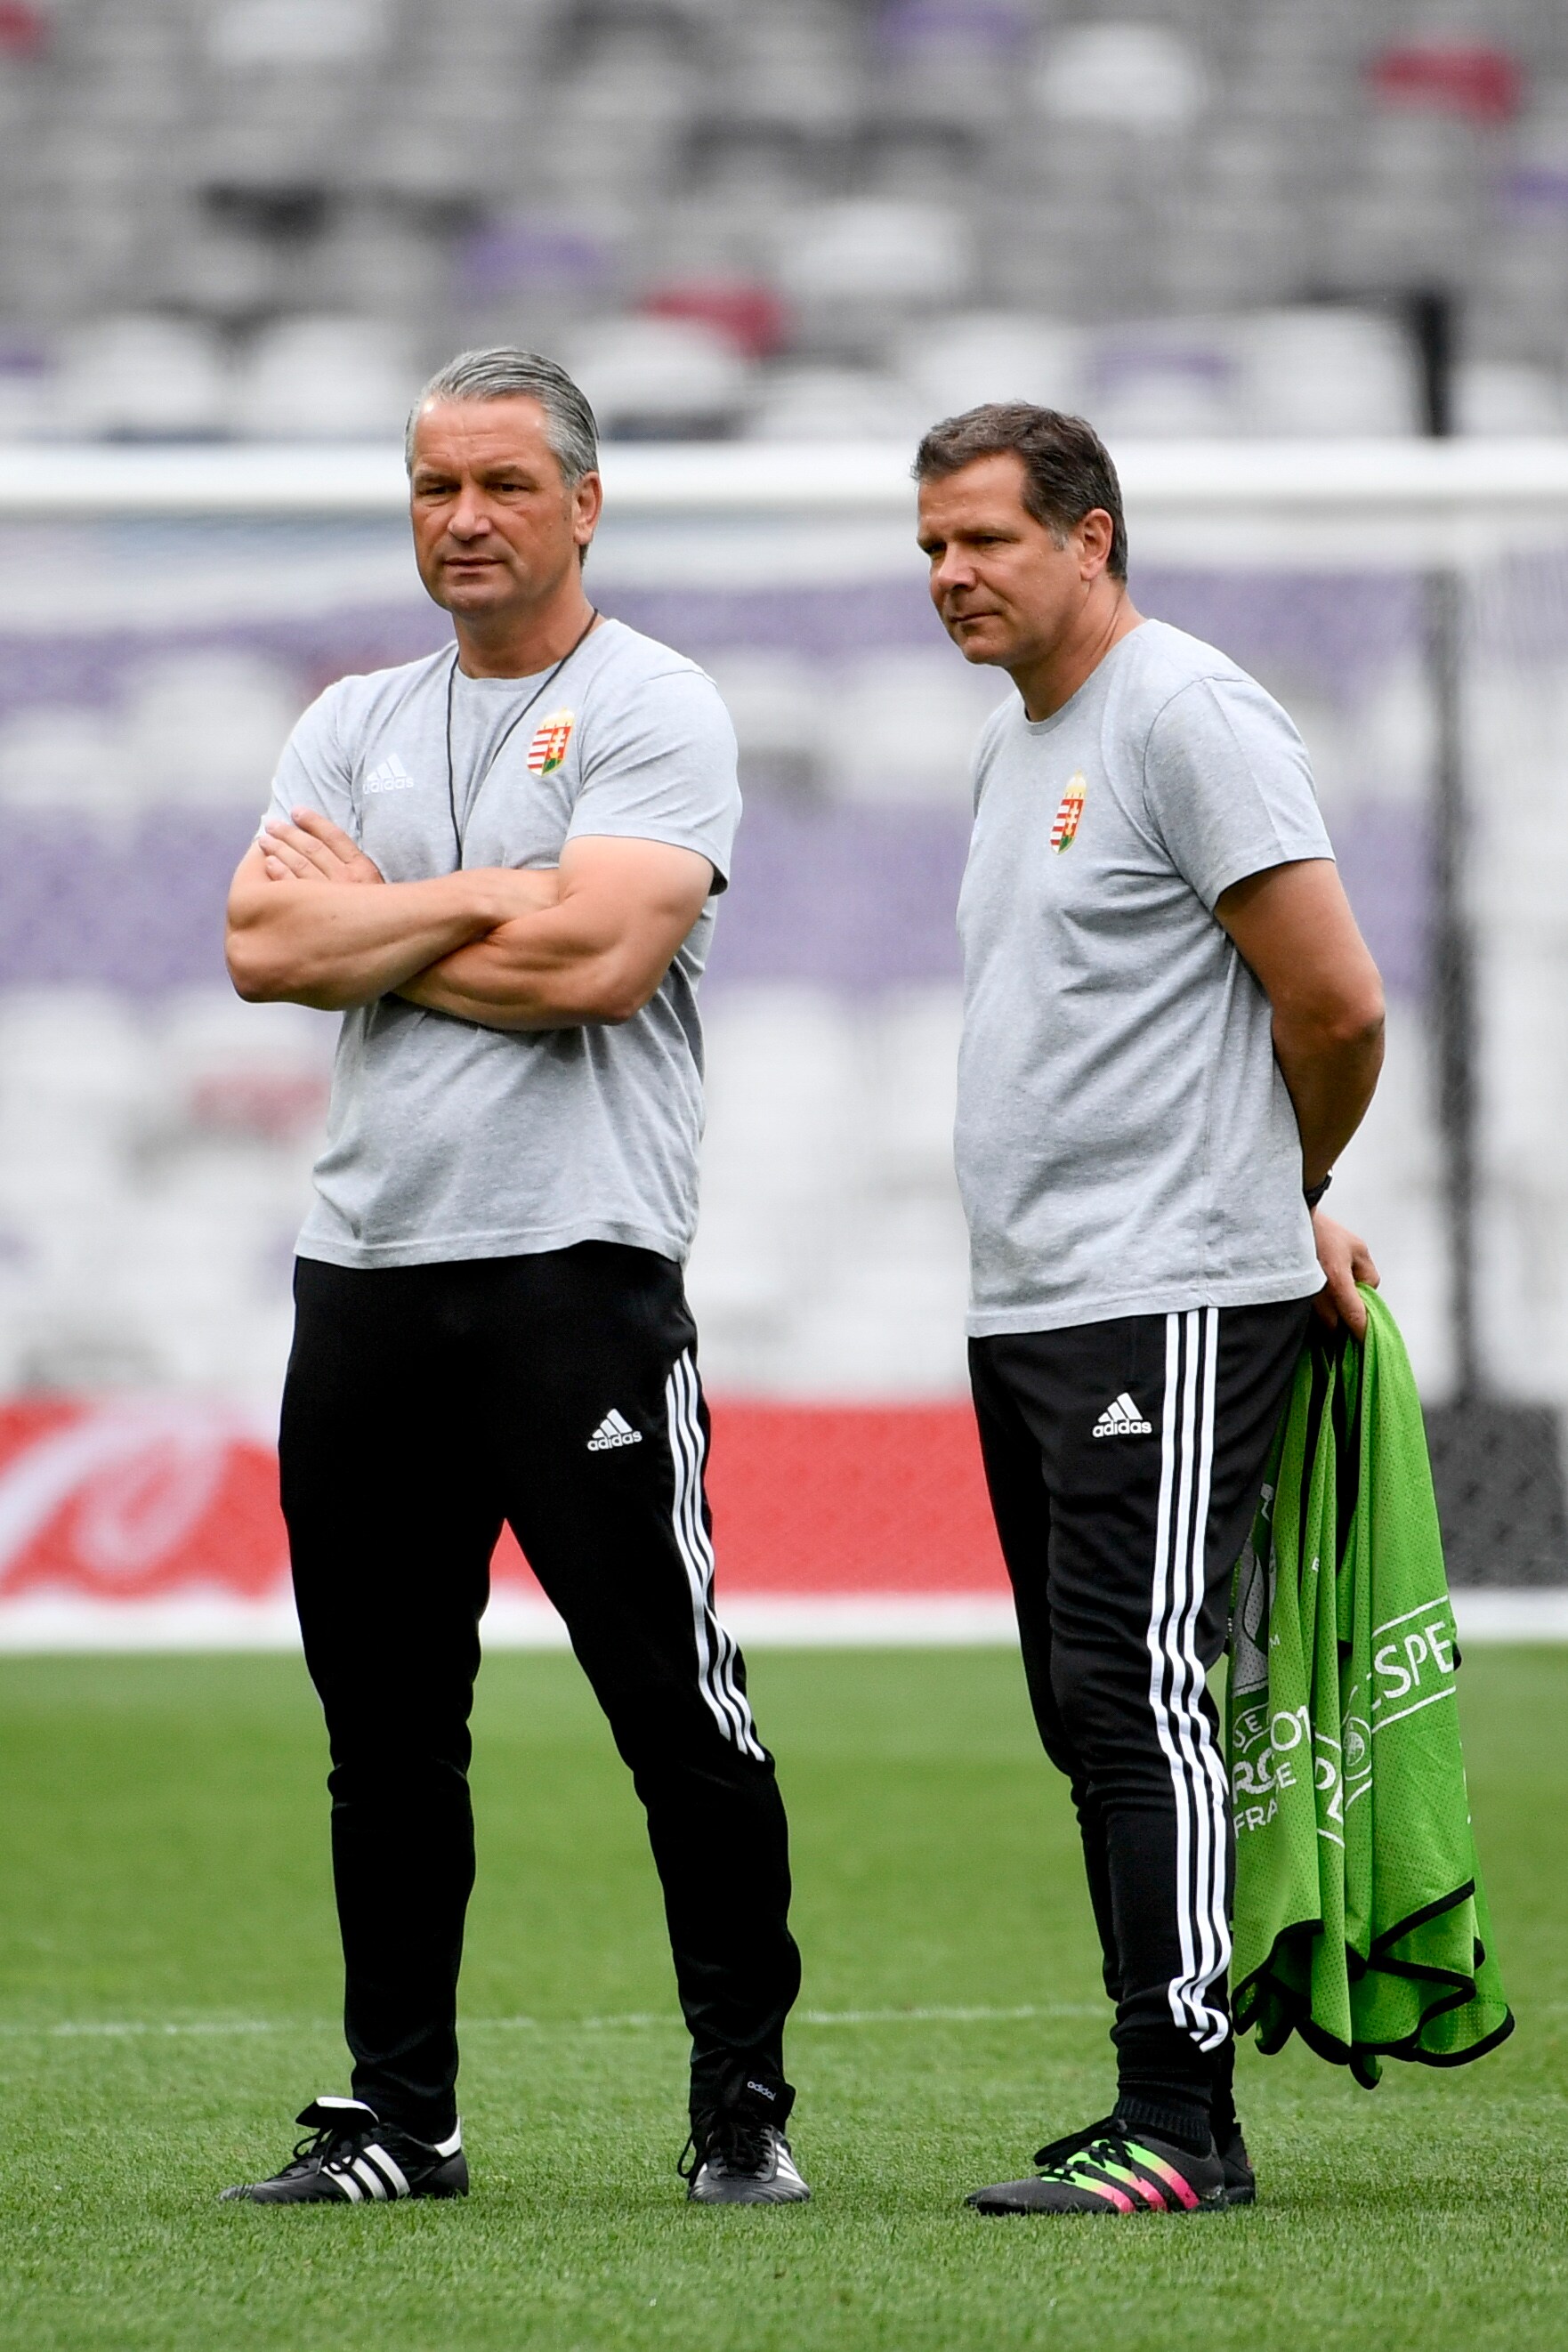 Hongaarse bondscoach Storck: "Wij starten zonder druk tegen België"